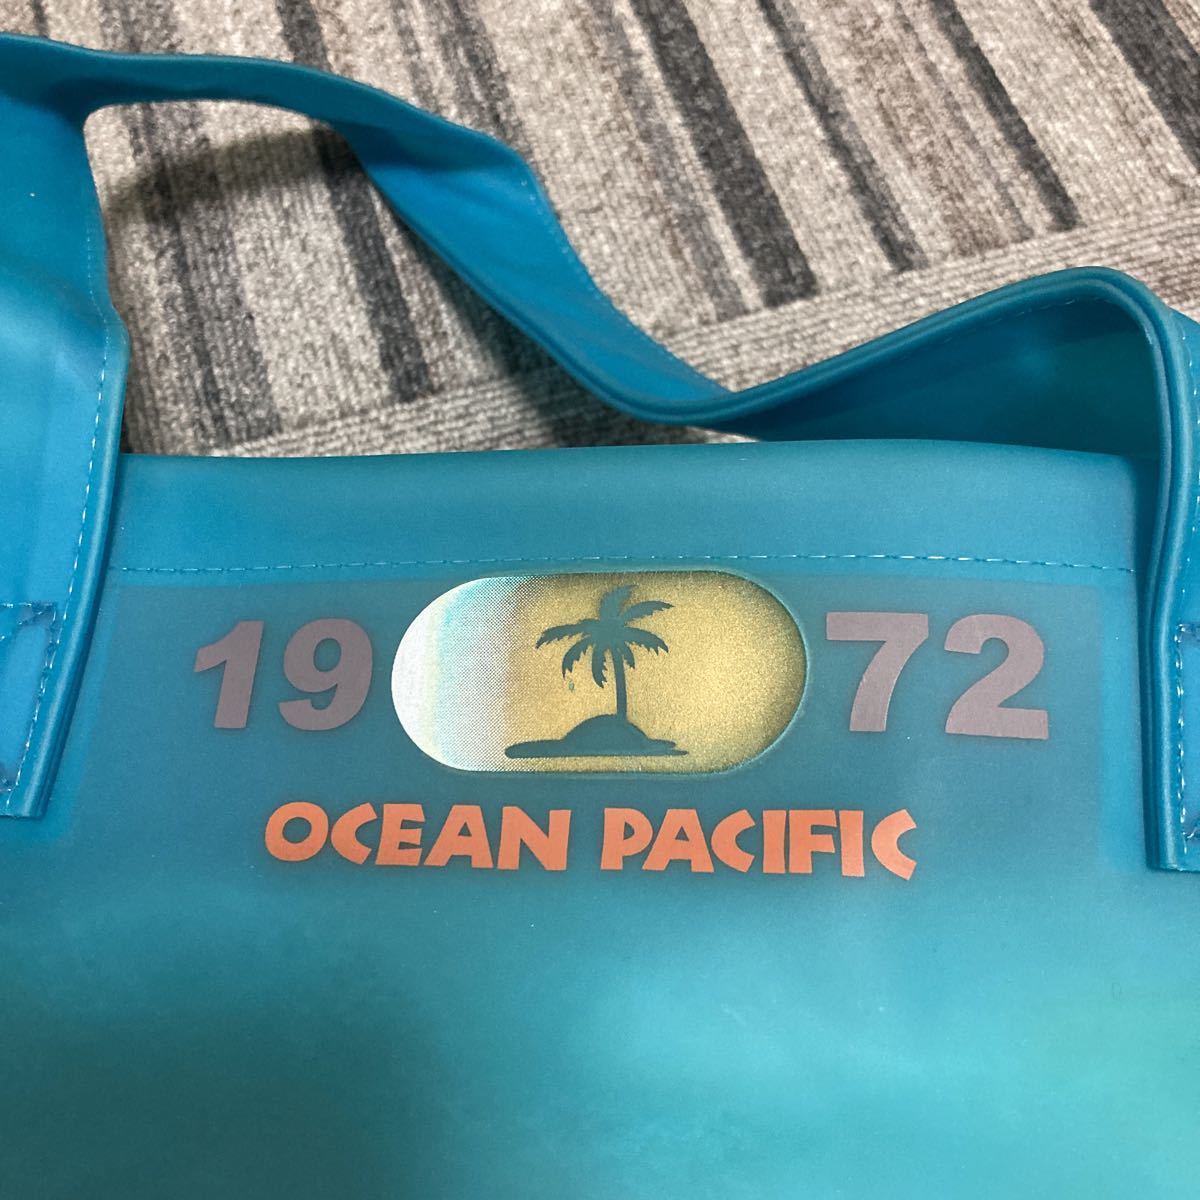  новый товар  неиспользуемый  OP... бассейн   сумка   пляж  сумка  ... брэнд  ... плавник   покупки   сумка 